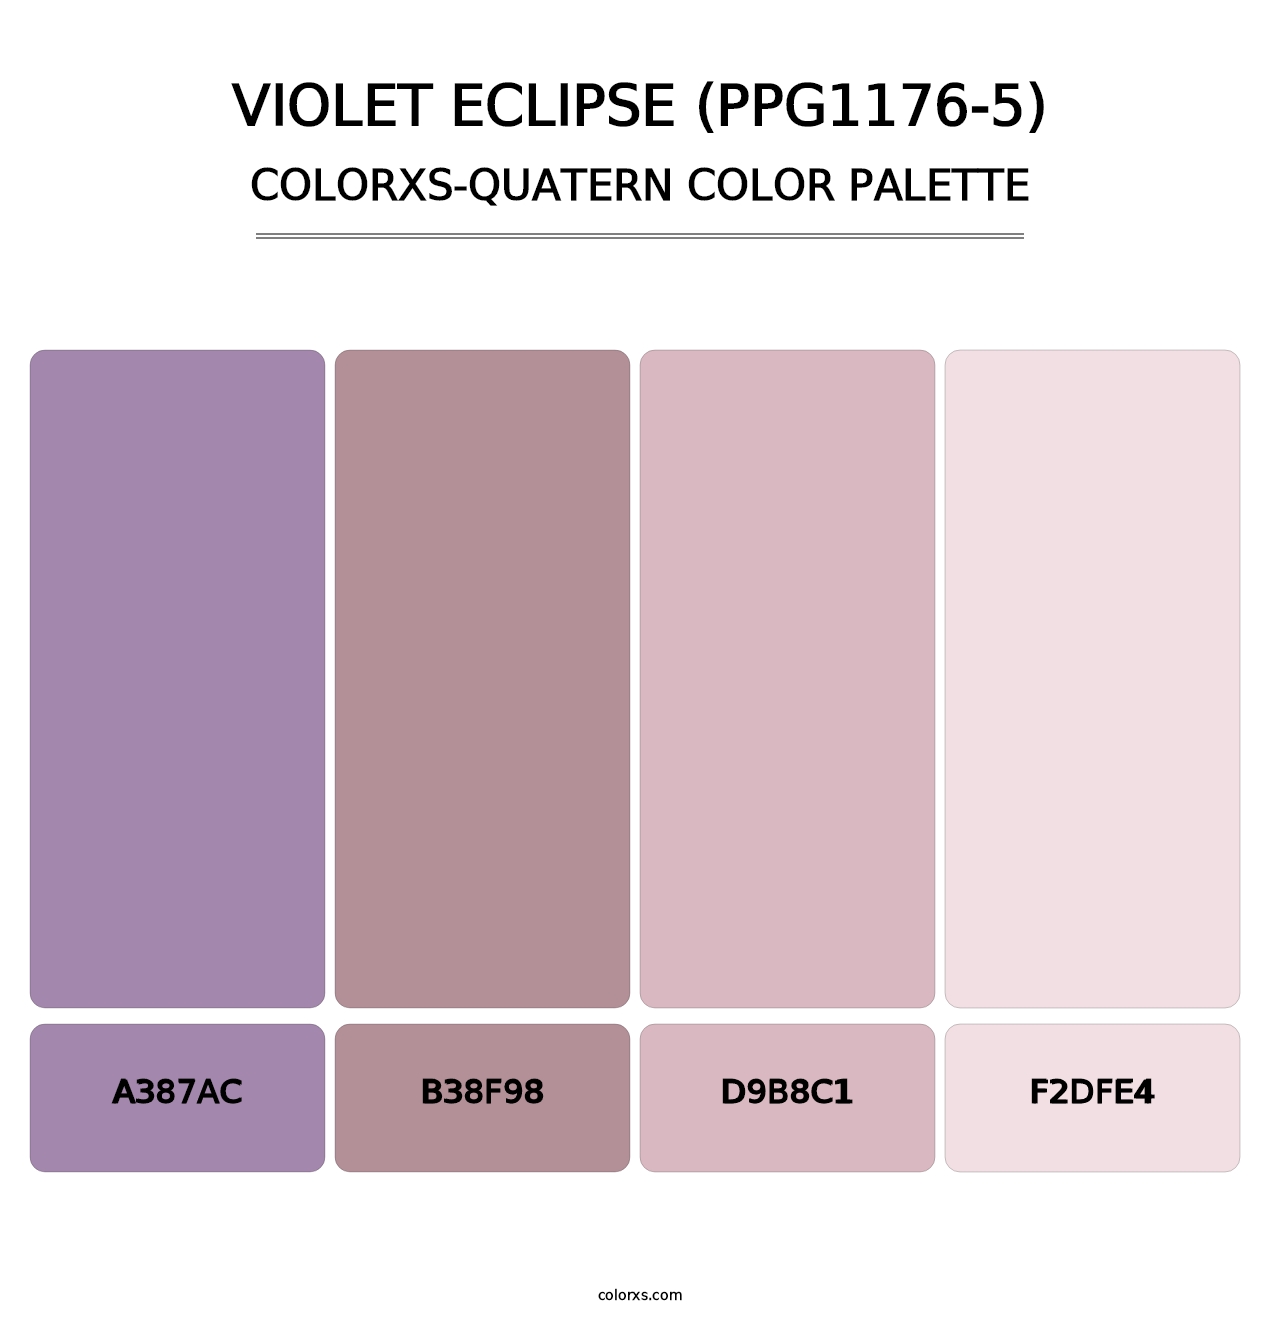 Violet Eclipse (PPG1176-5) - Colorxs Quatern Palette